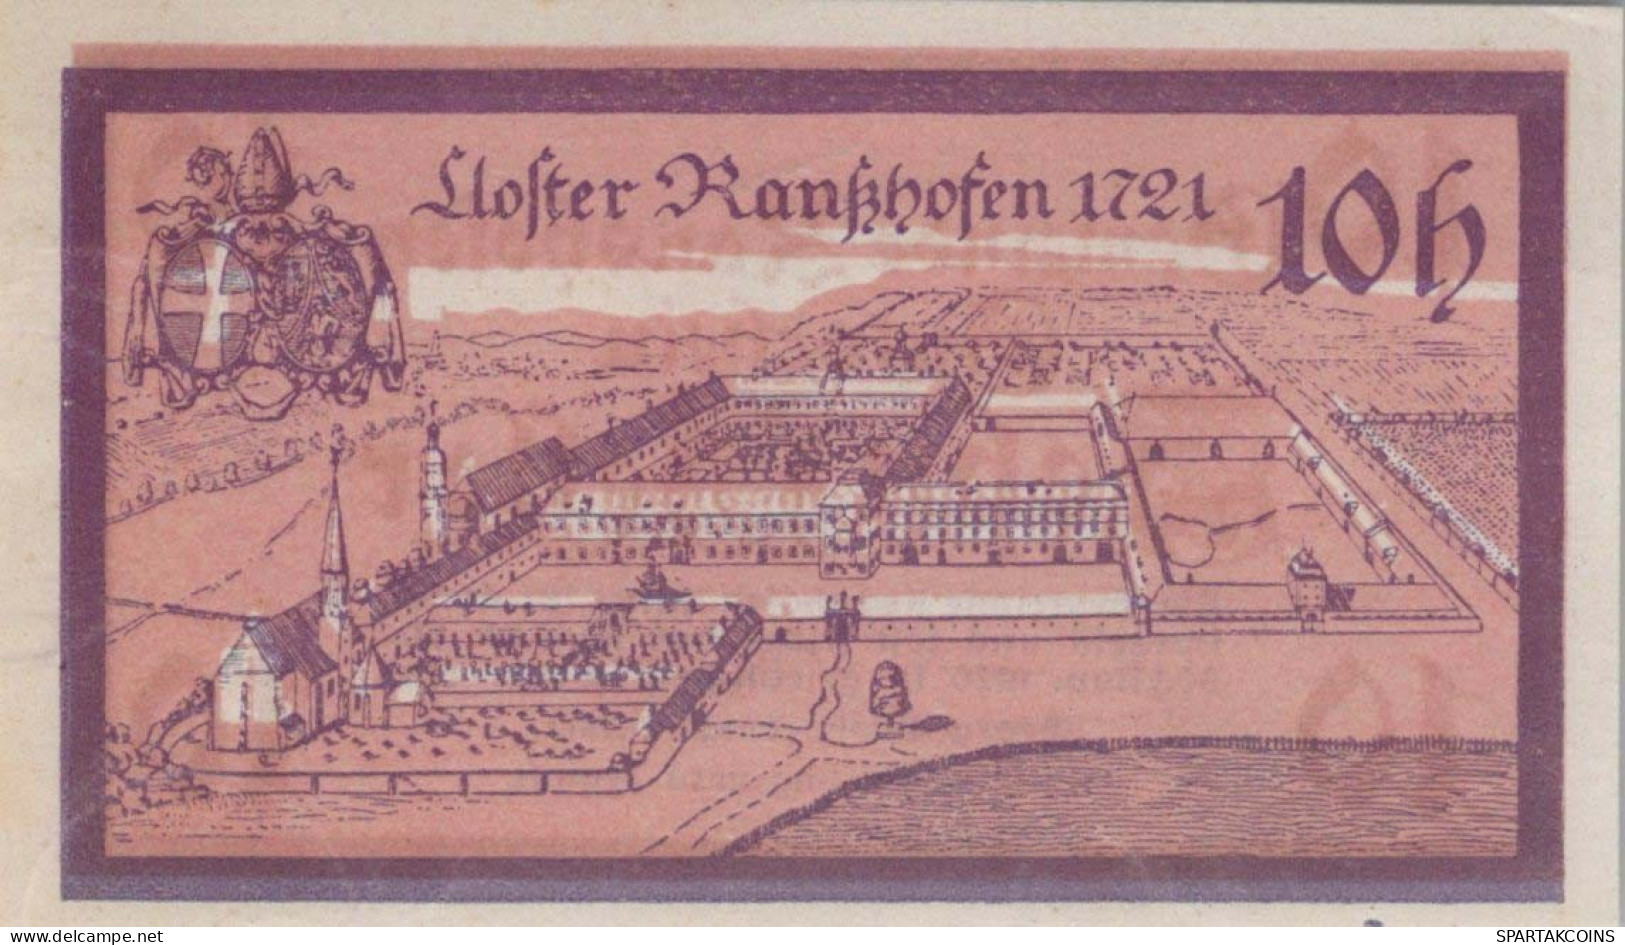 10 HELLER 1920 Stadt RANSHOFEN Oberösterreich Österreich Notgeld Banknote #PE570 - [11] Emisiones Locales